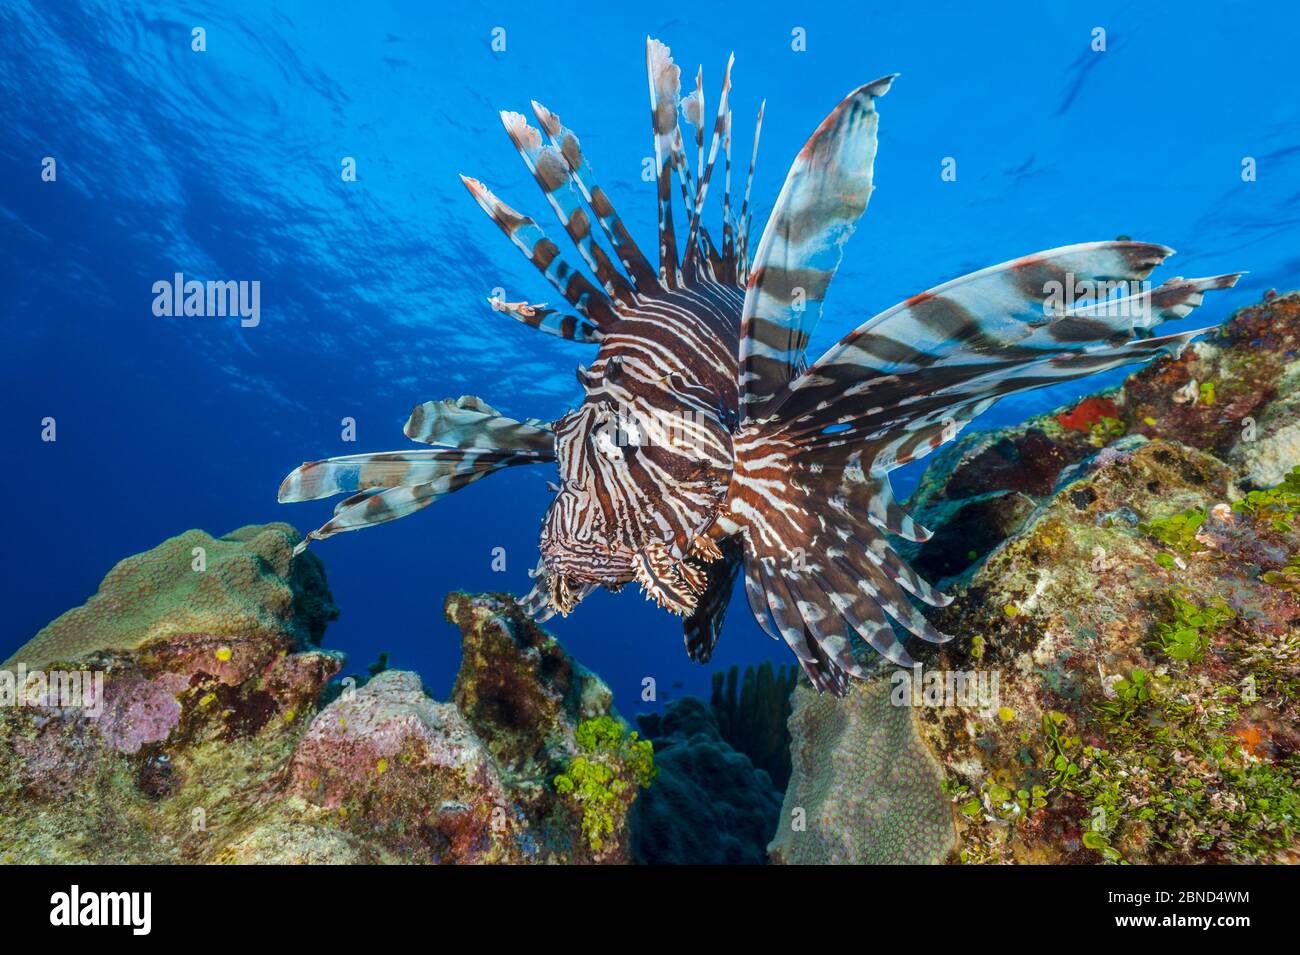 Il grande pesce leone maschio (volitans di Pterois) si muove sopra la barriera corallina. East End, Grand Cayman, Isole Cayman, Mar dei Caraibi. Specie invasive. Foto Stock